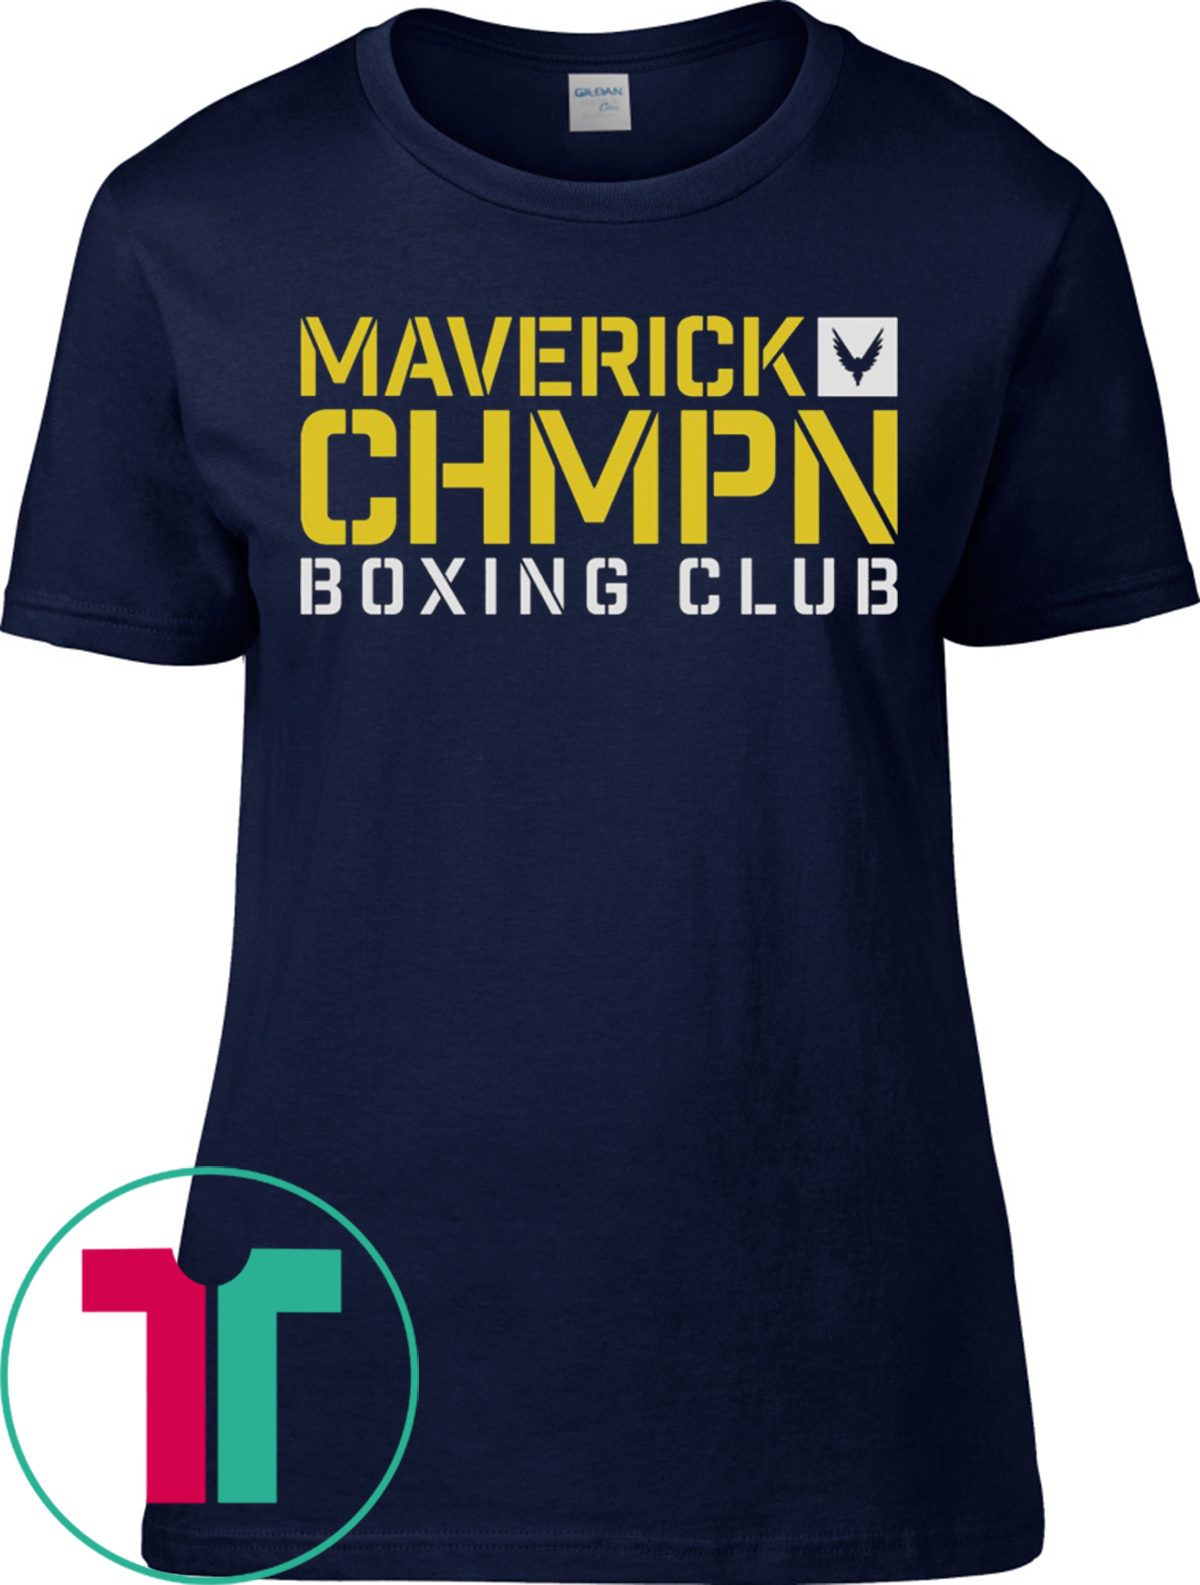 Logan Paul Merch Maverick Champion Boxing Tee Shirt Teefilm